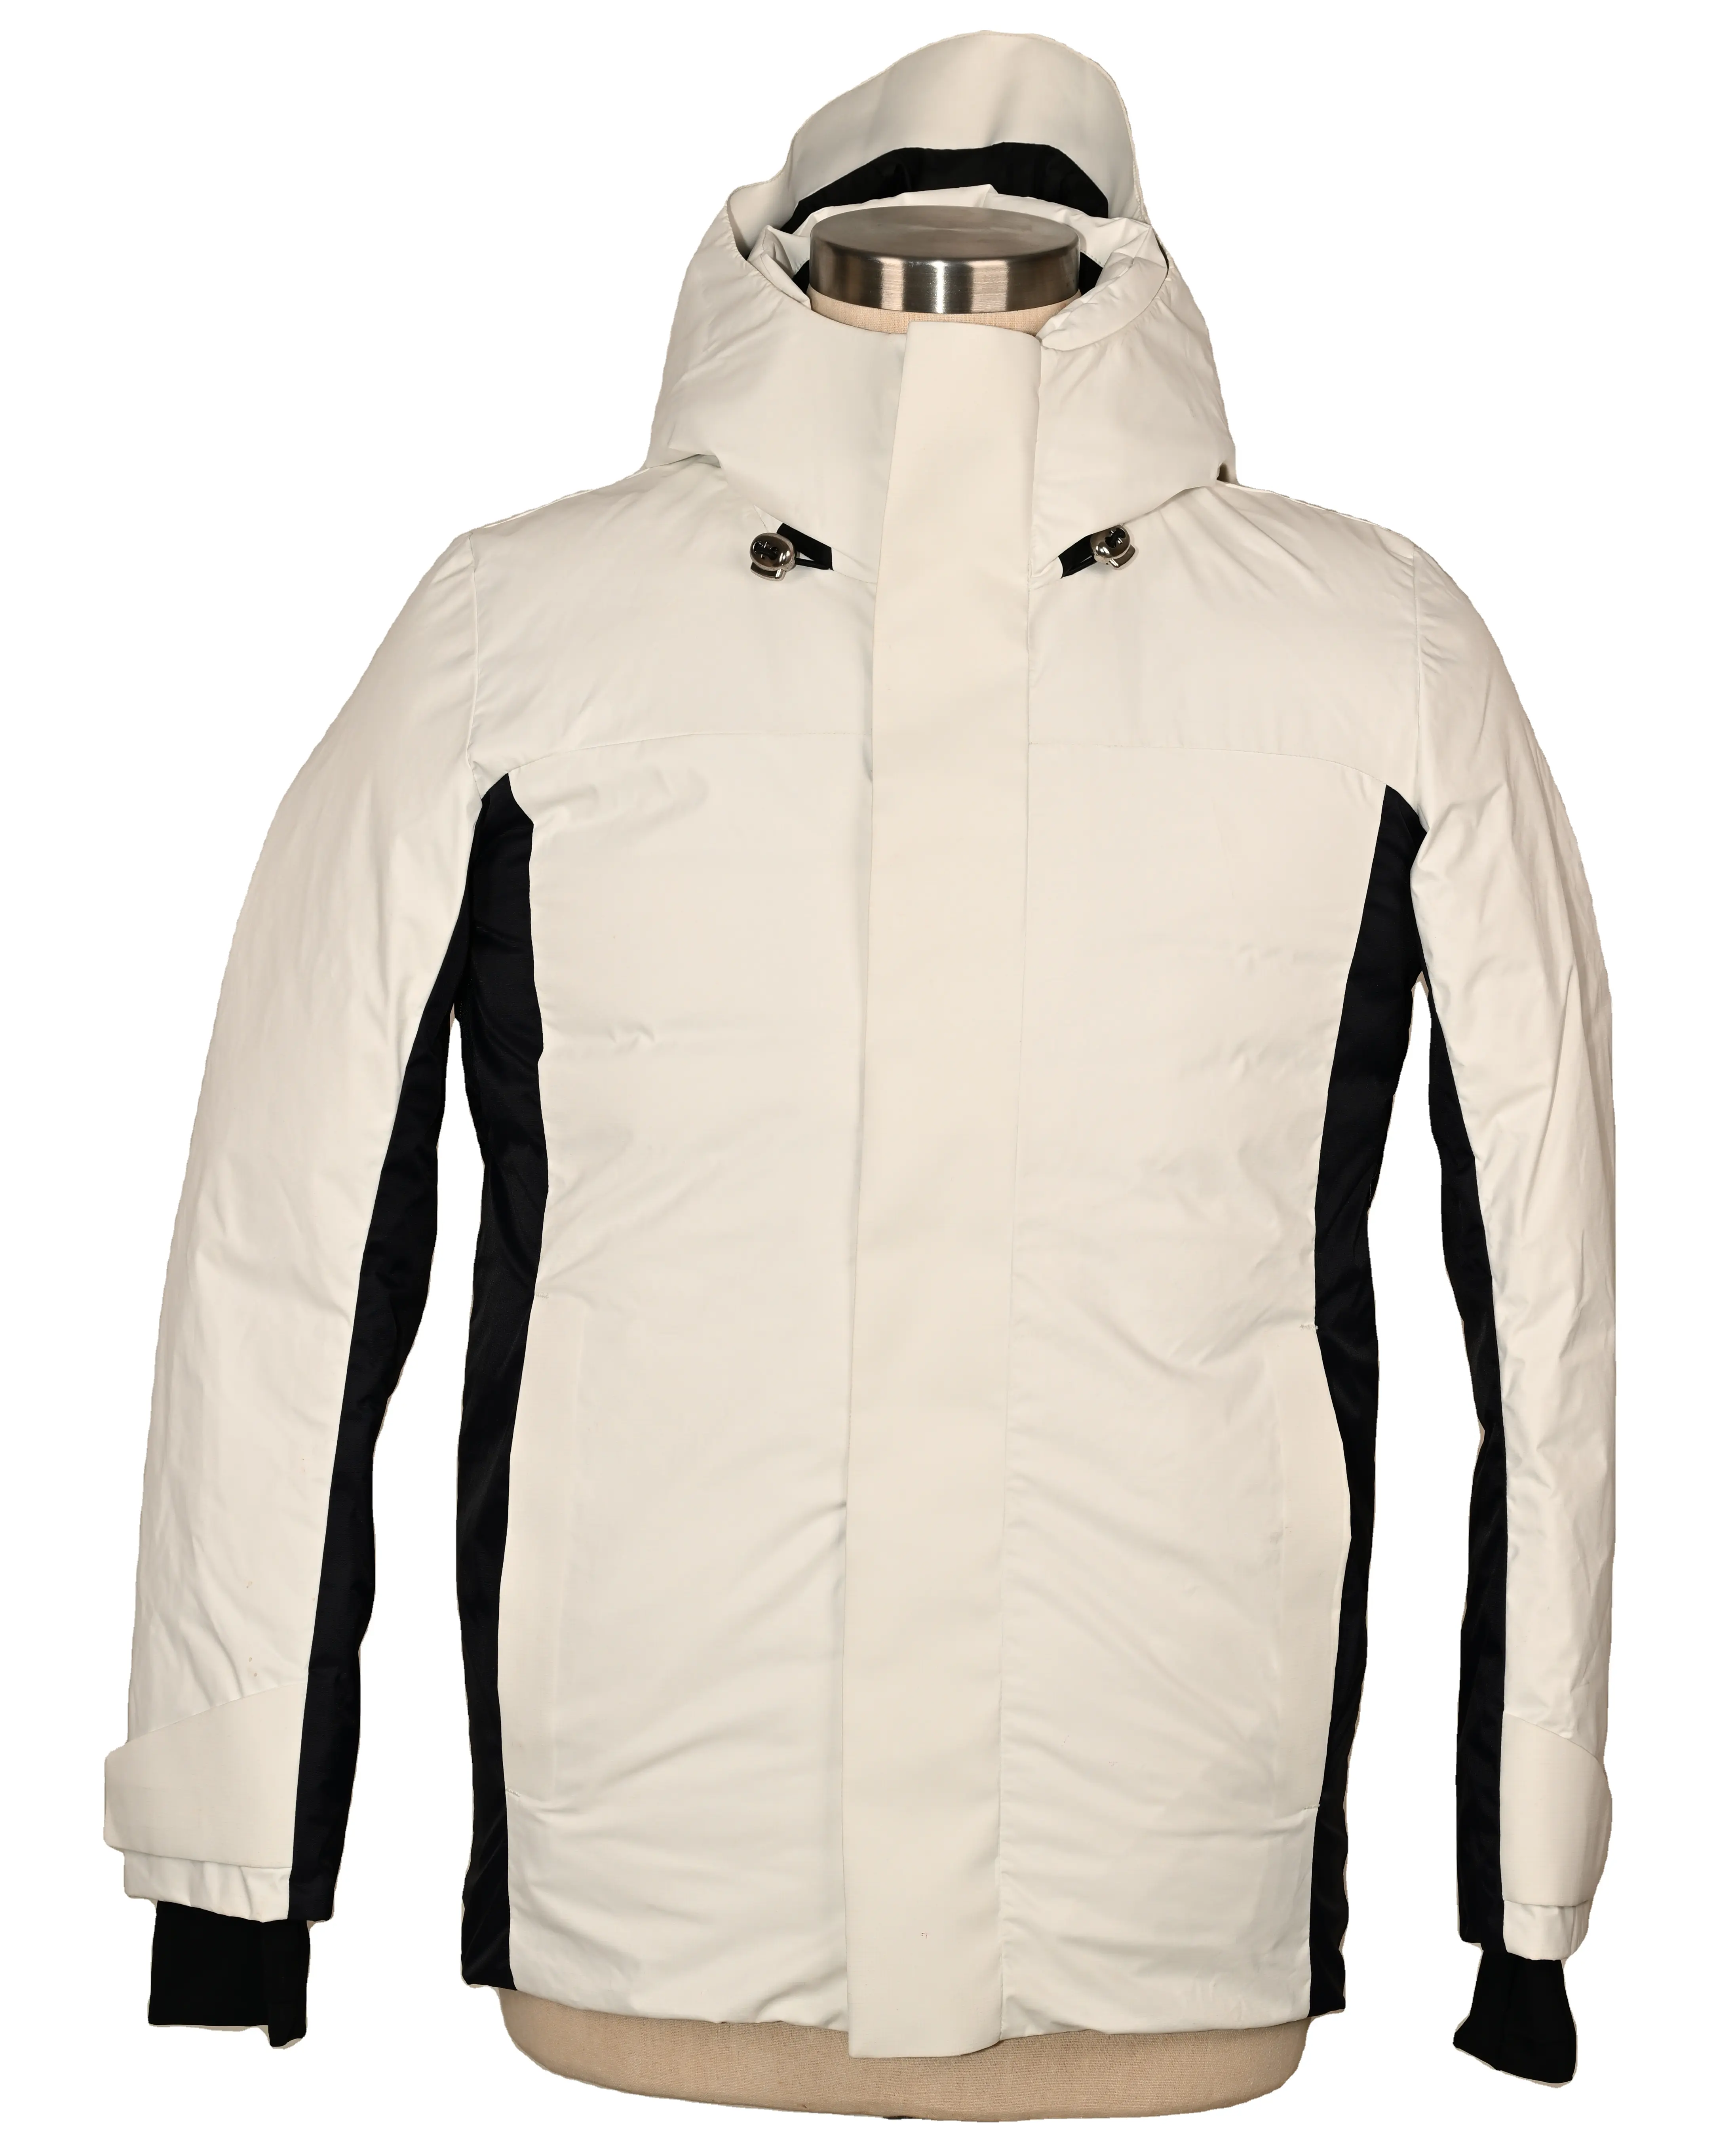 Custom Design Storm jacket men's outdoor windproof warm goose down coat waterproof mountaineering suit